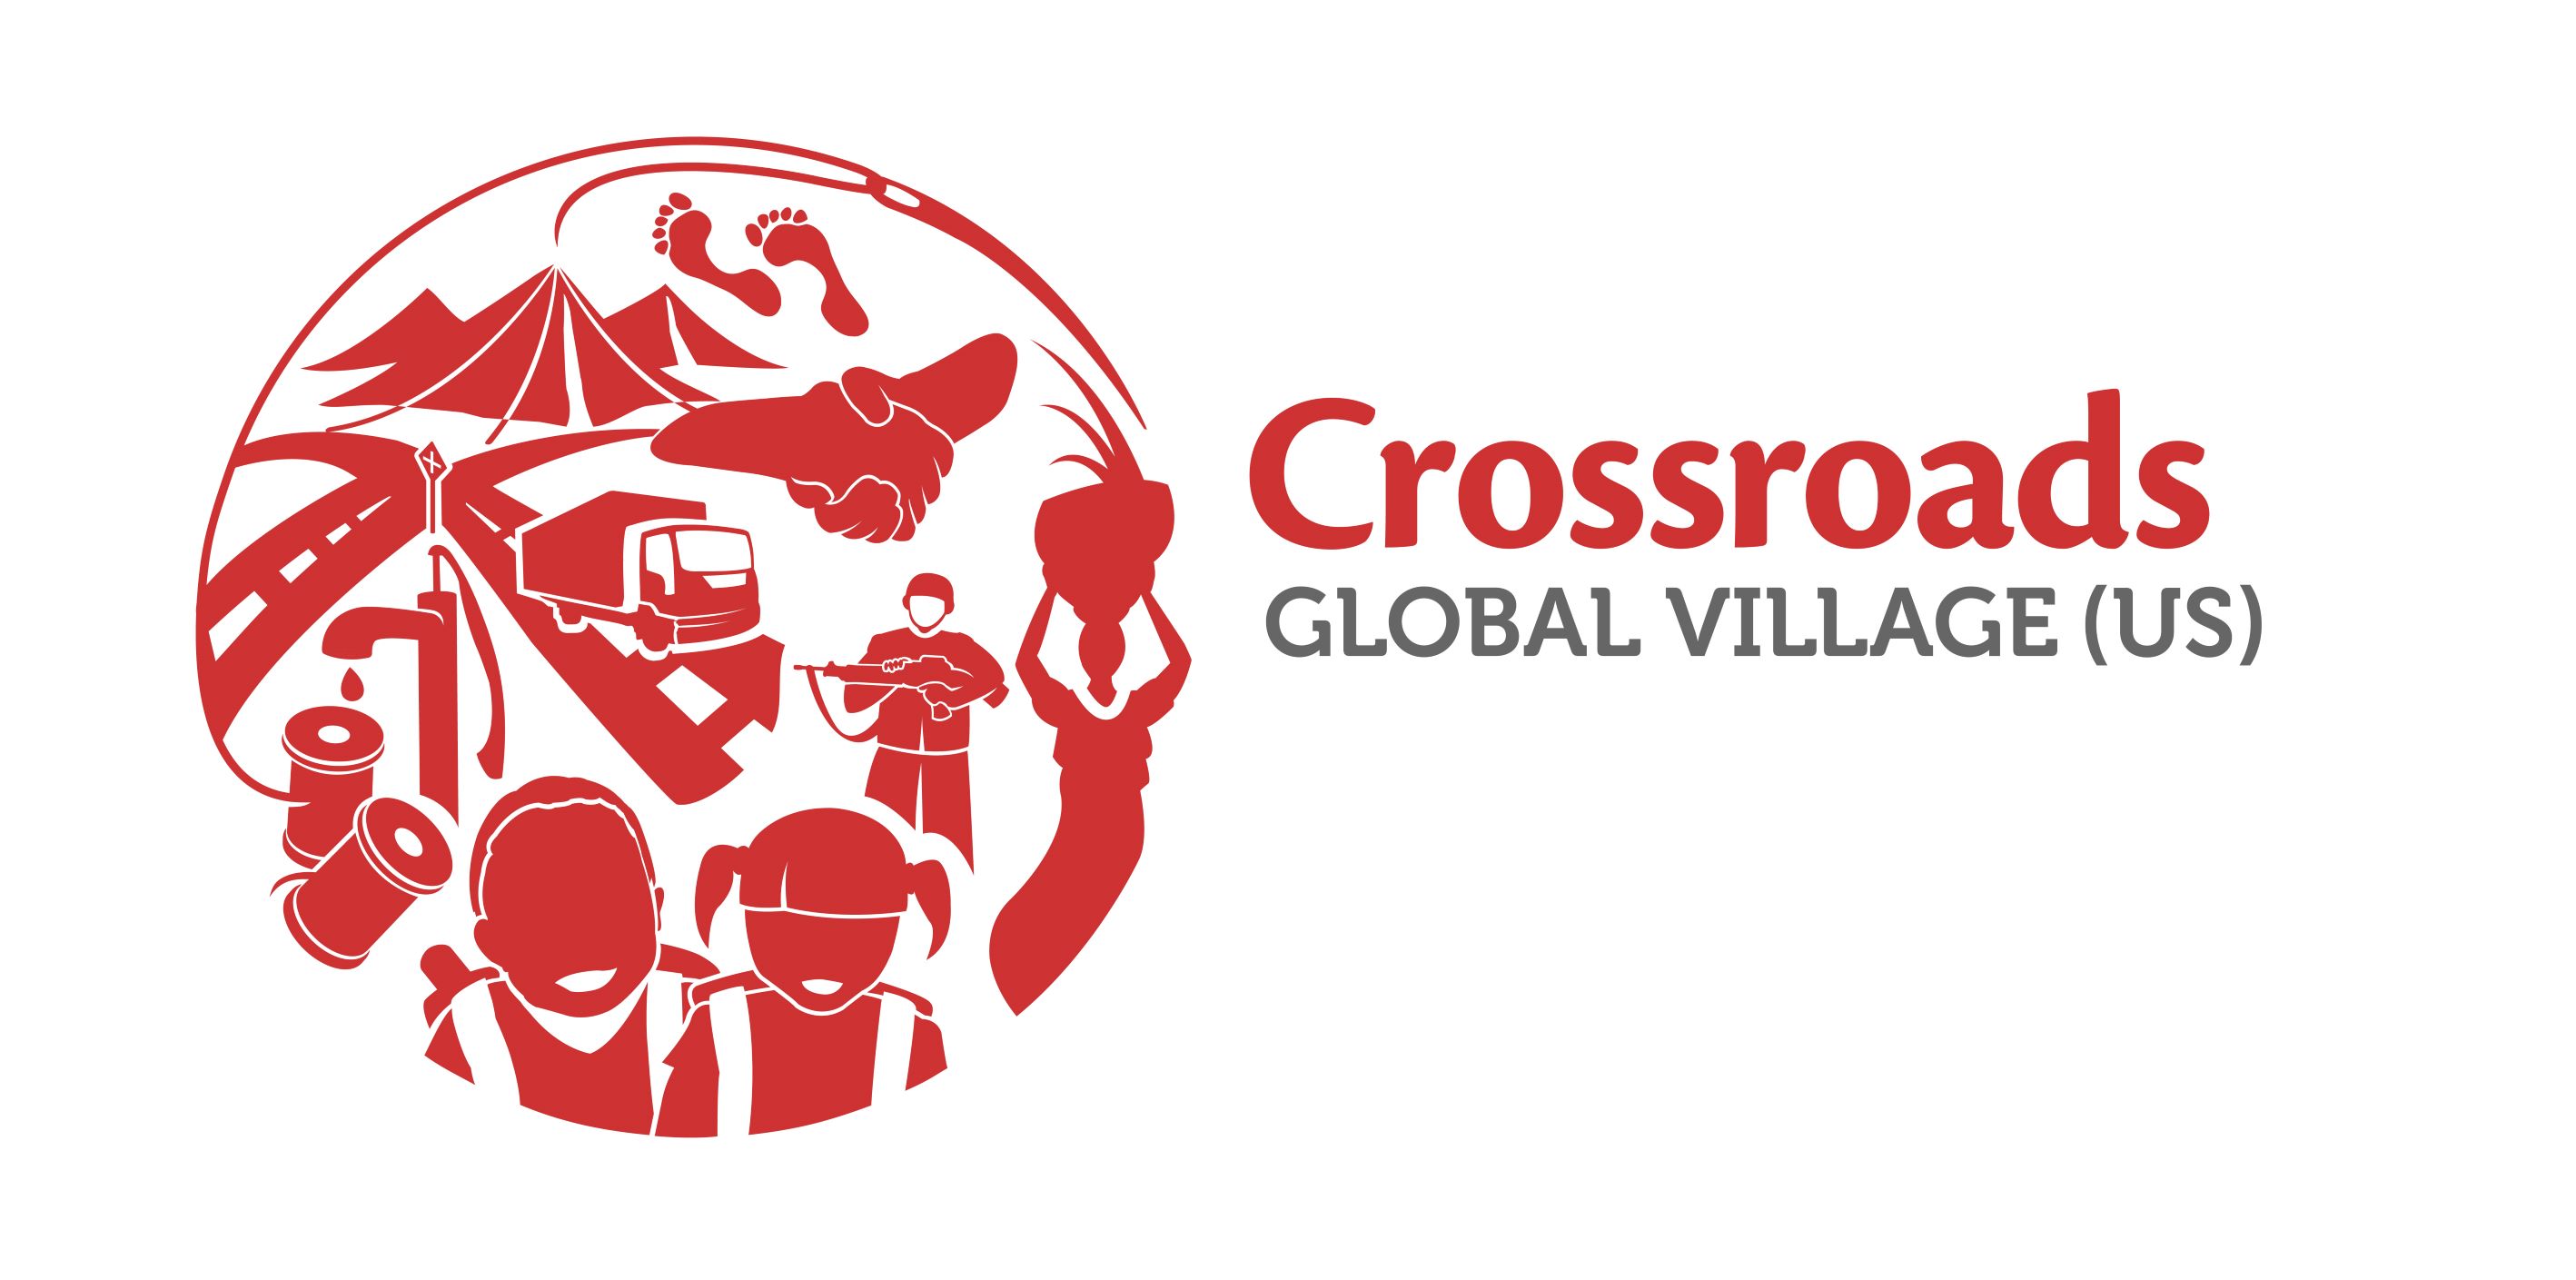 Crossroads Global Village (US) Limited logo